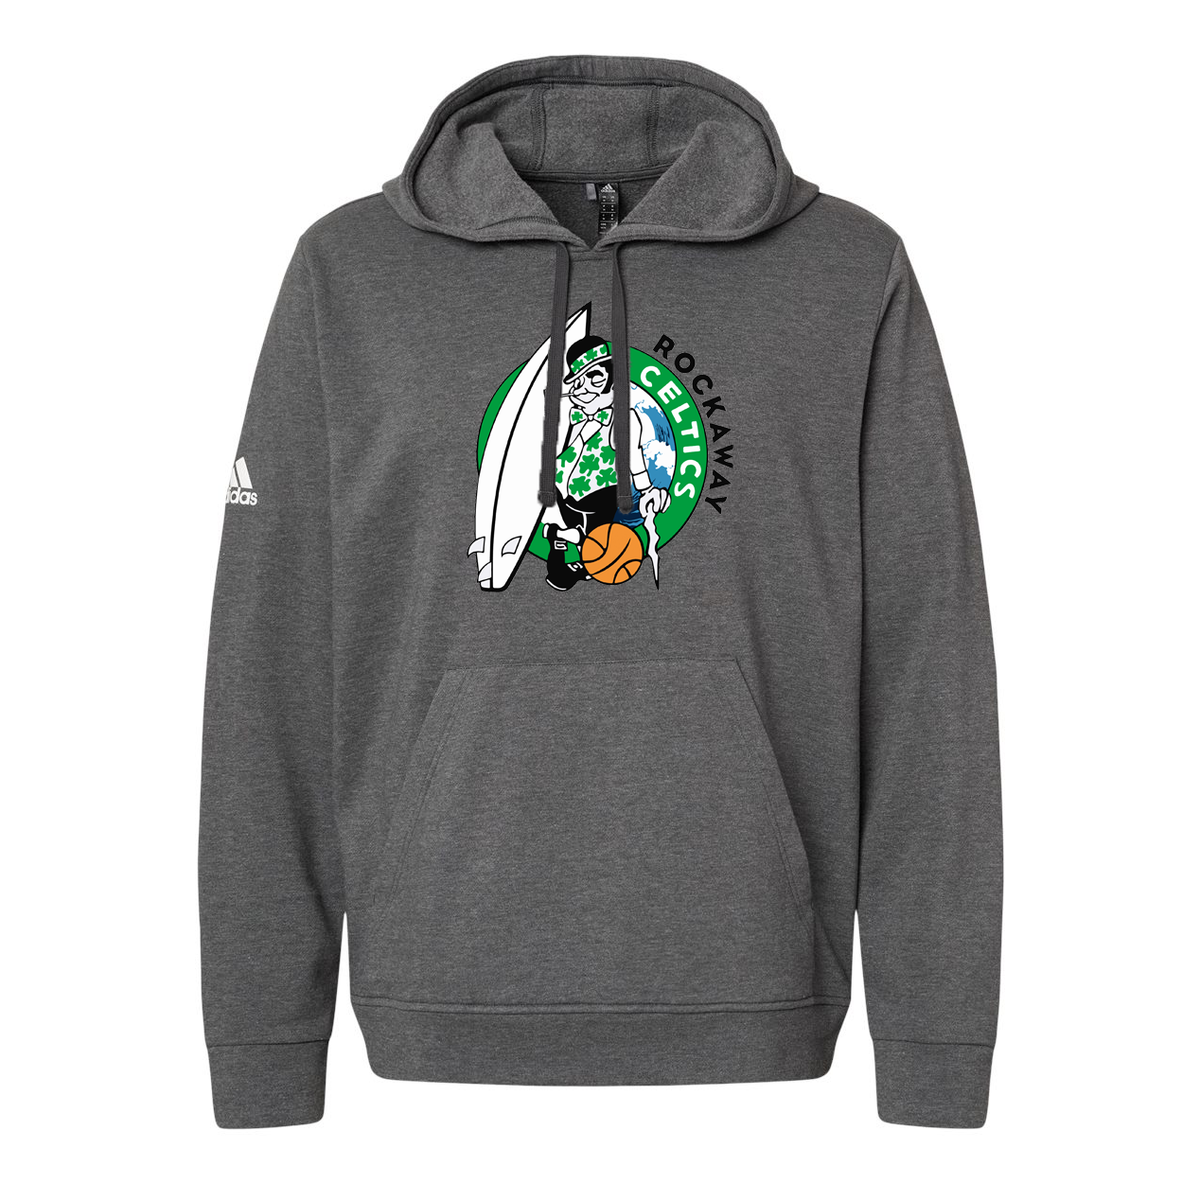 Rockaway Celtics Adidas Fleece Hooded Sweatshirt